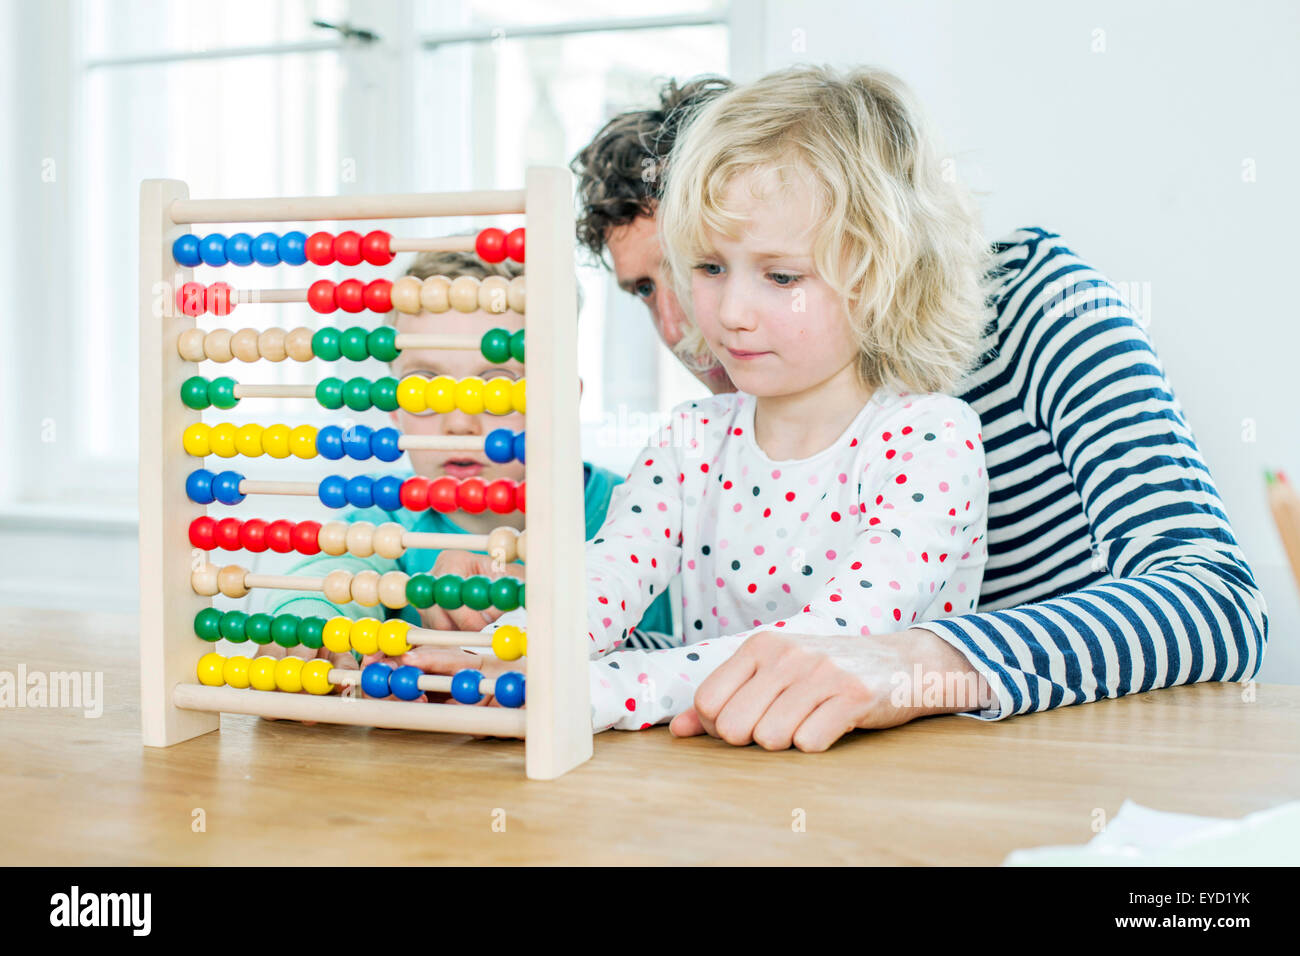 Vater und Kinder rechnen mit abacus Stockfotografie - Alamy